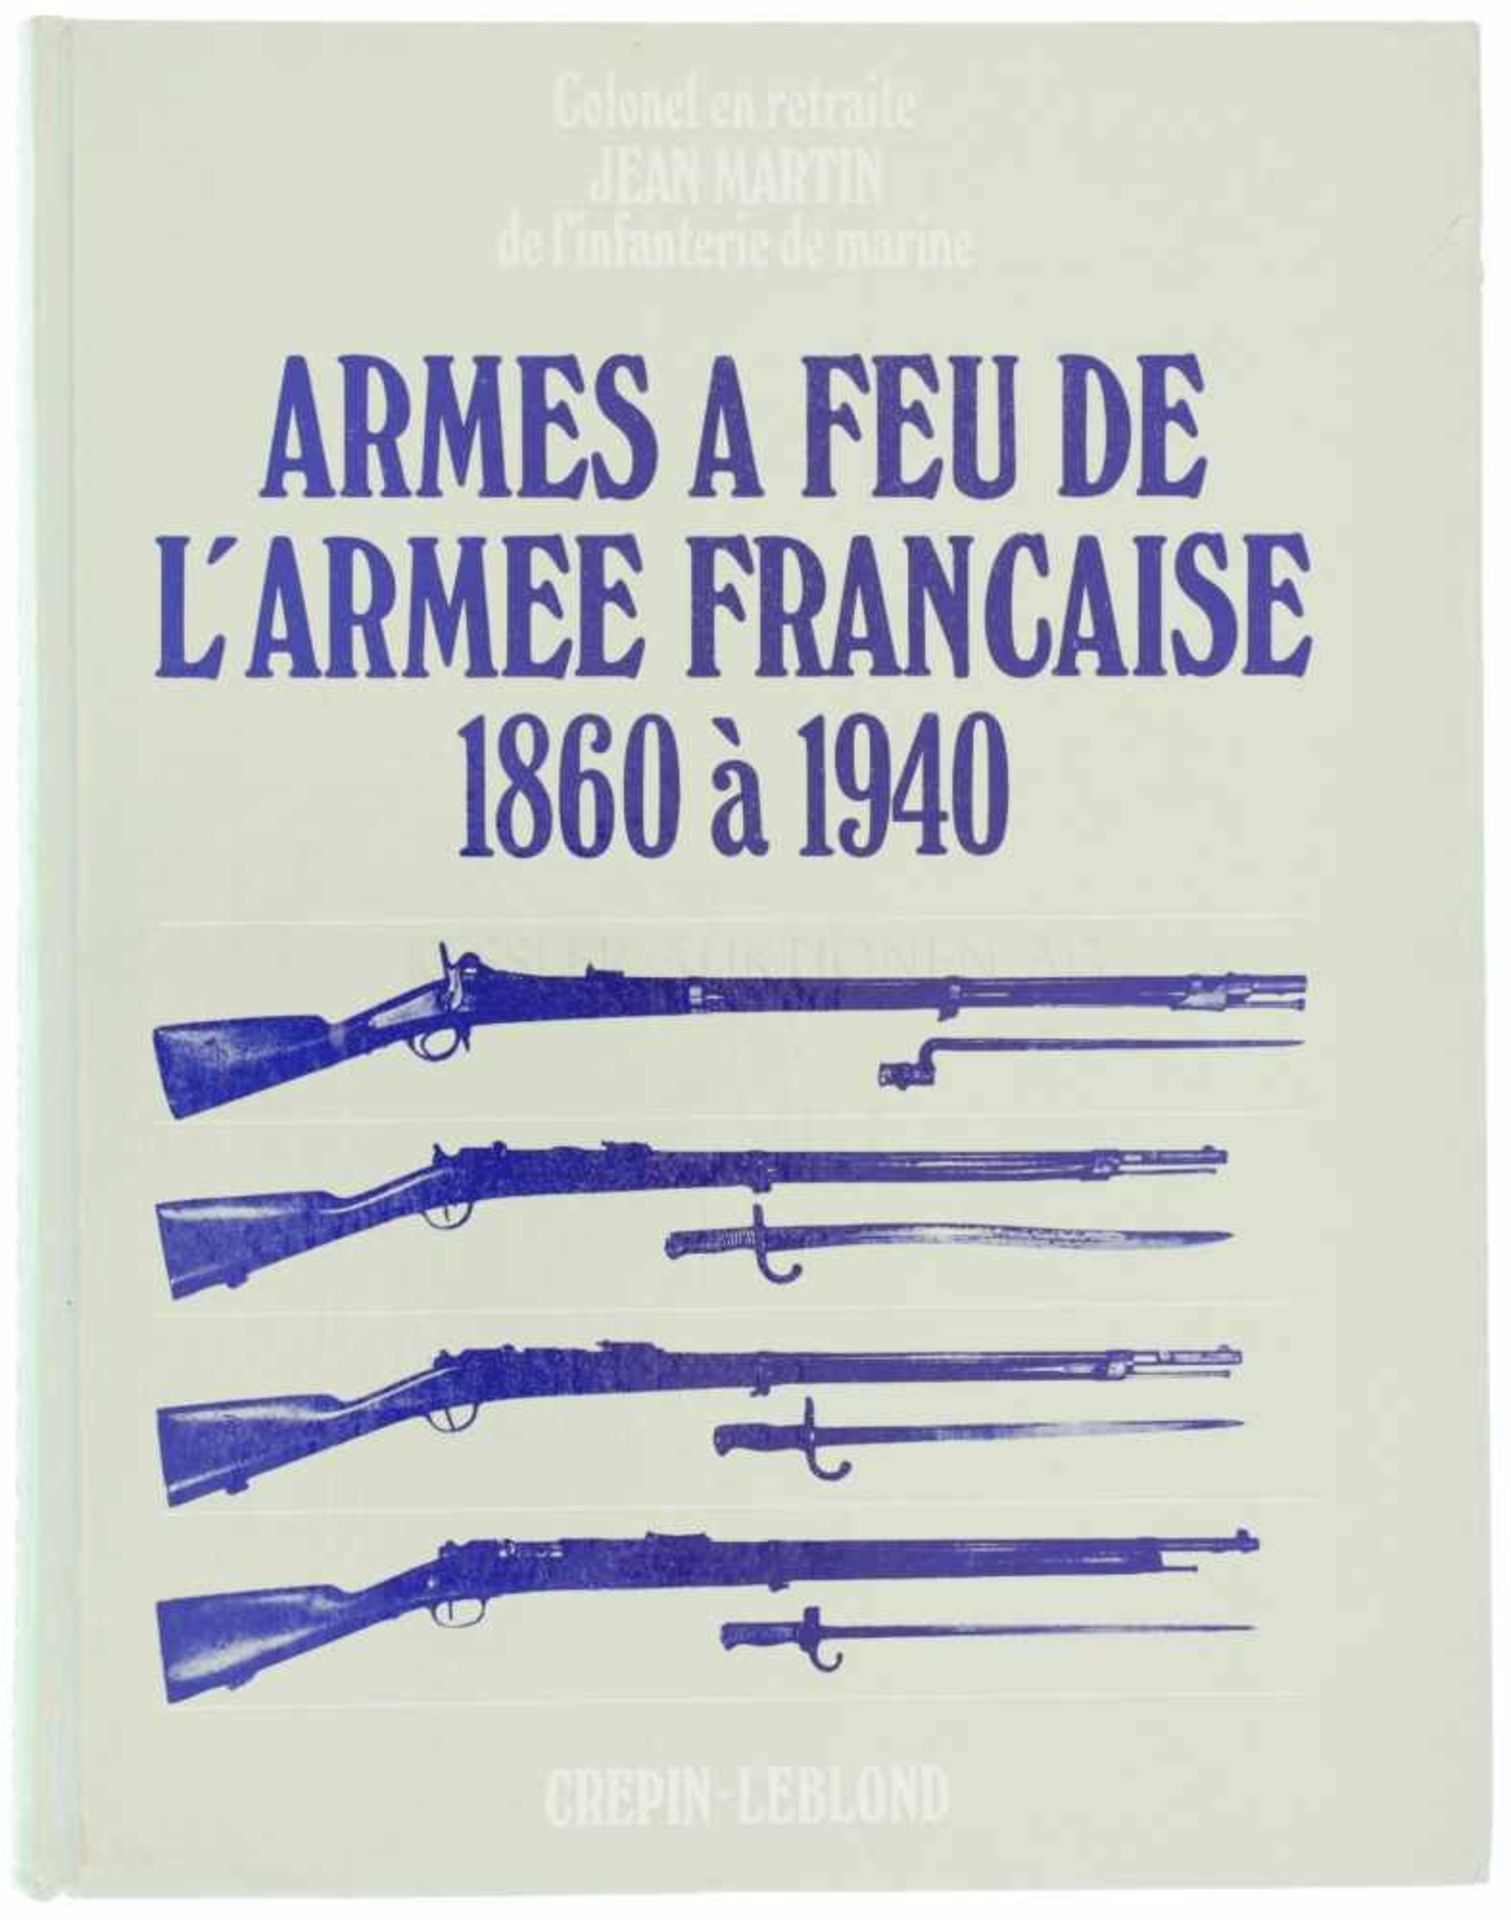 Armes a Feu de l'Armee Francaise, 1860 à 1940 Autor Jean Martin, Editions Crepin-Leblond Paris,